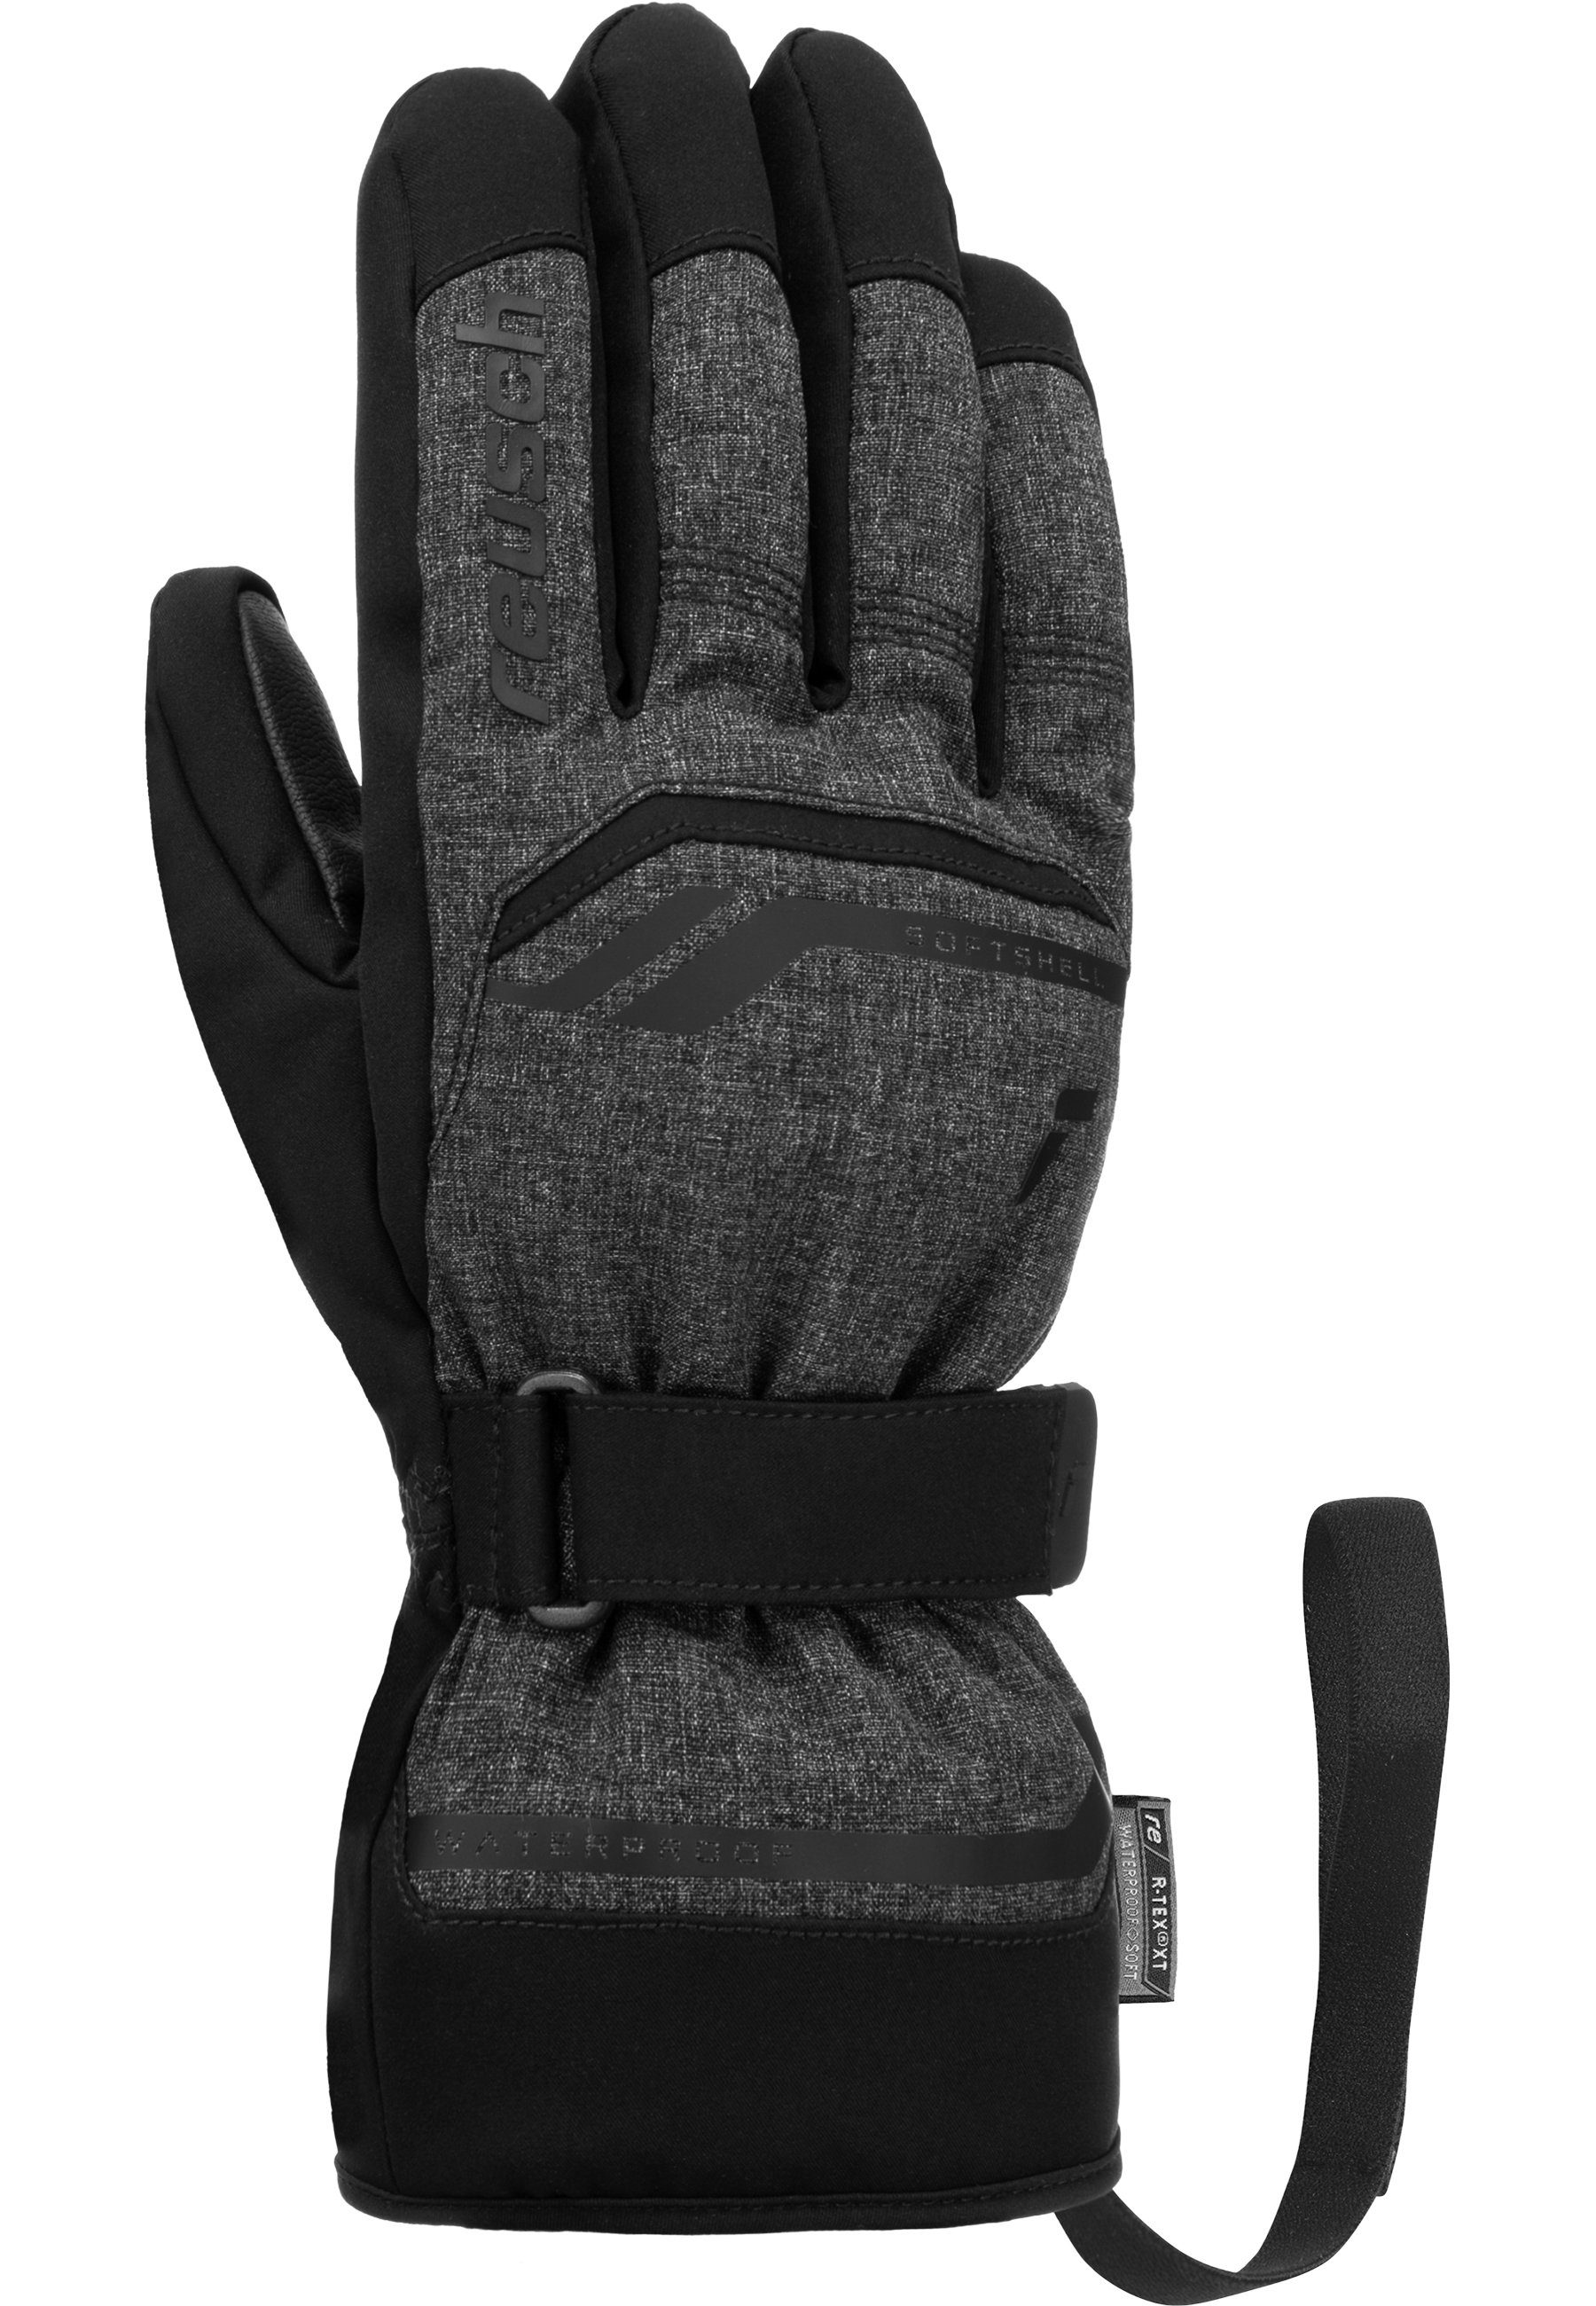 XT Skihandschuhe atmungsaktiv Reusch warm, wasserdicht dunkelgrau-schwarz R-TEX® Primus sehr und